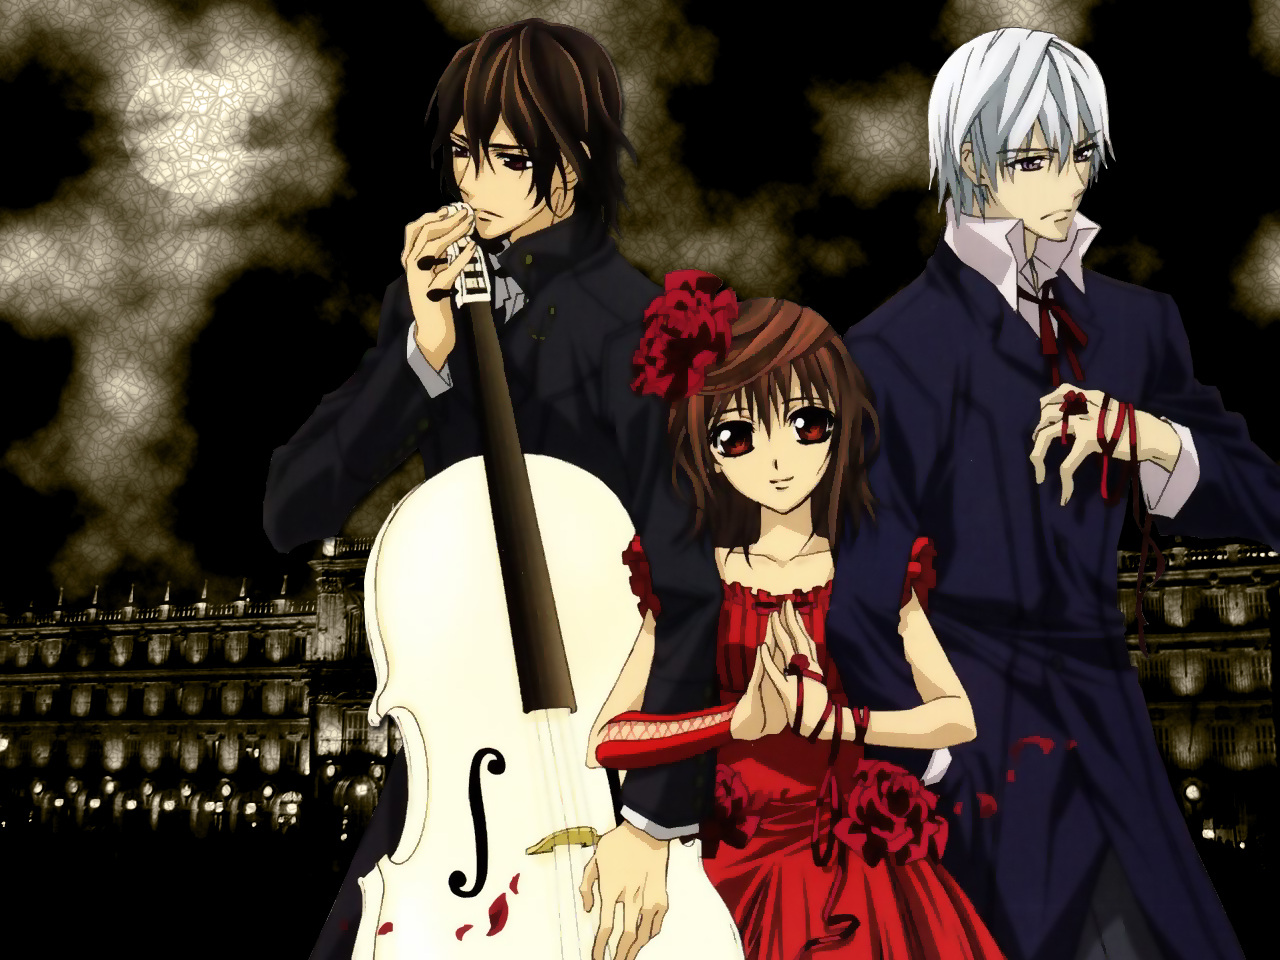 fond d'écran vampire knight,anime,instrument de musique,violon,cheveux noirs,guitare basse